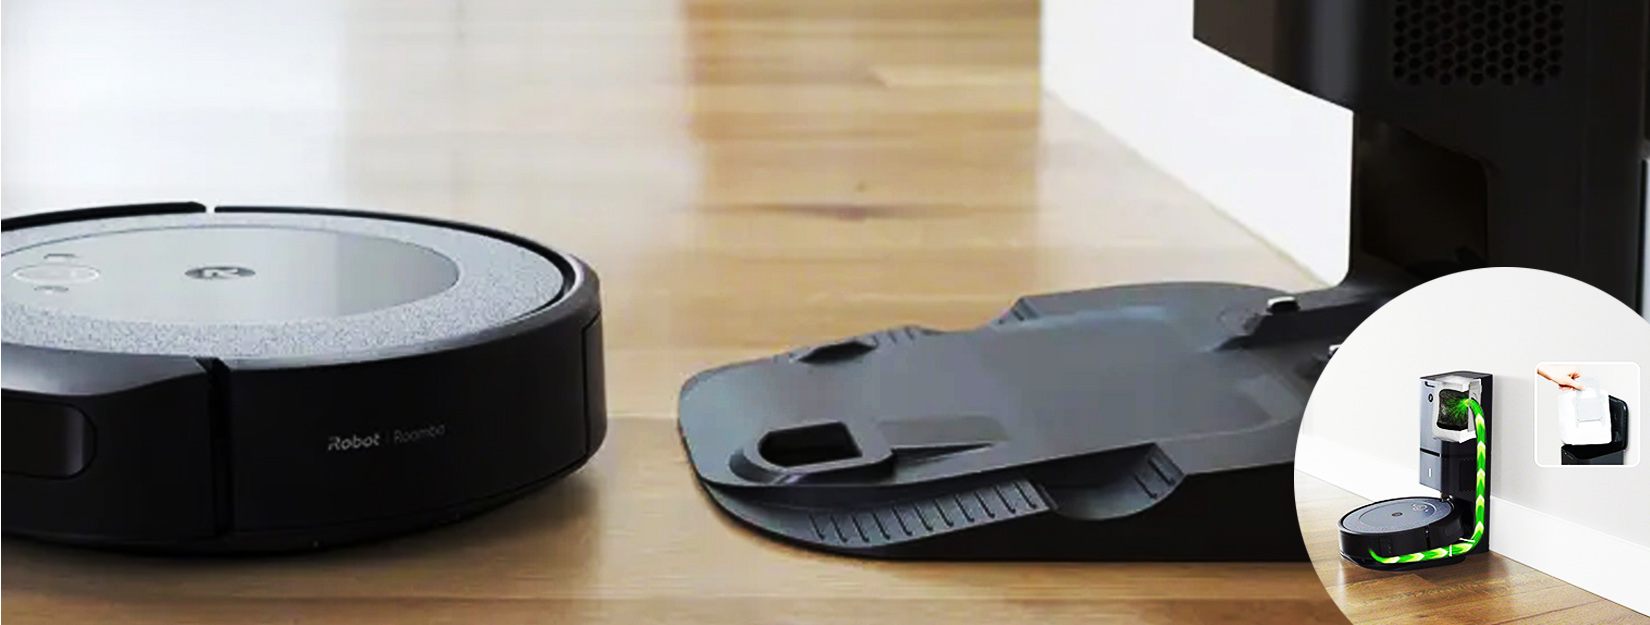  Робот пилосос iRobot Roomba i3 може працювати з використанням бази самоочищення